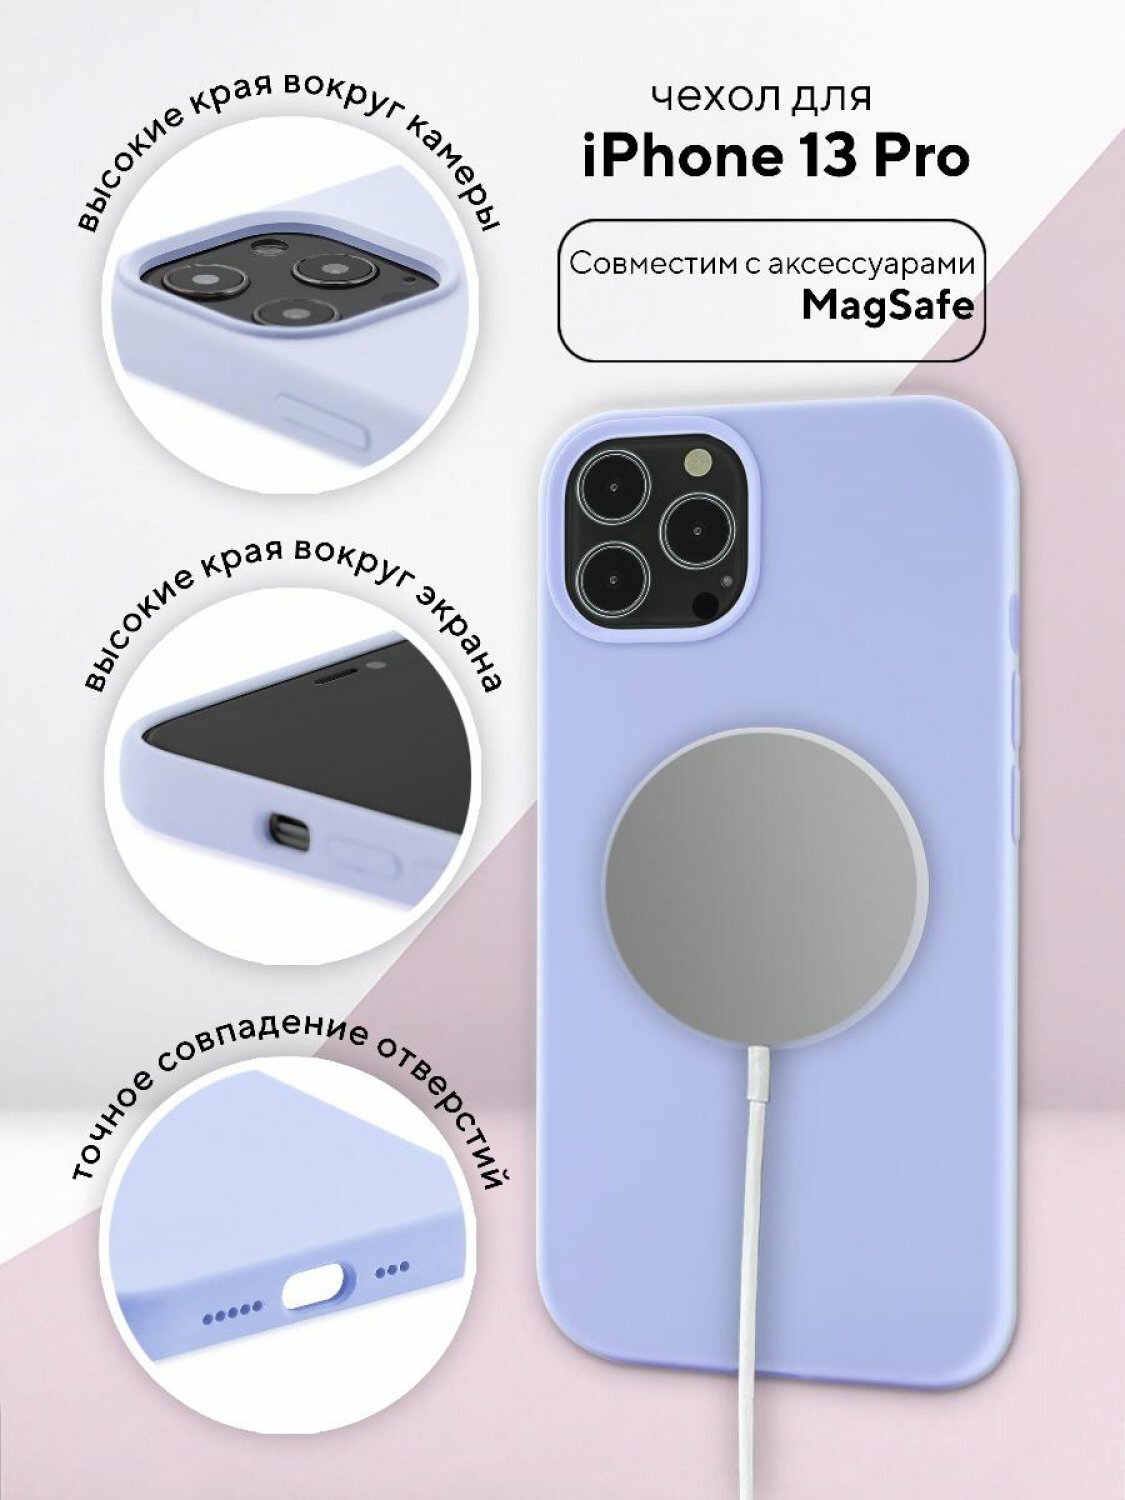 Чехол для Apple iPhone 13 Pro КRUЧЕ Silicone MagSafe Lilac purple, противоударный кейс, силиконовый бампер магсейф, софттач накладка с защитой камеры